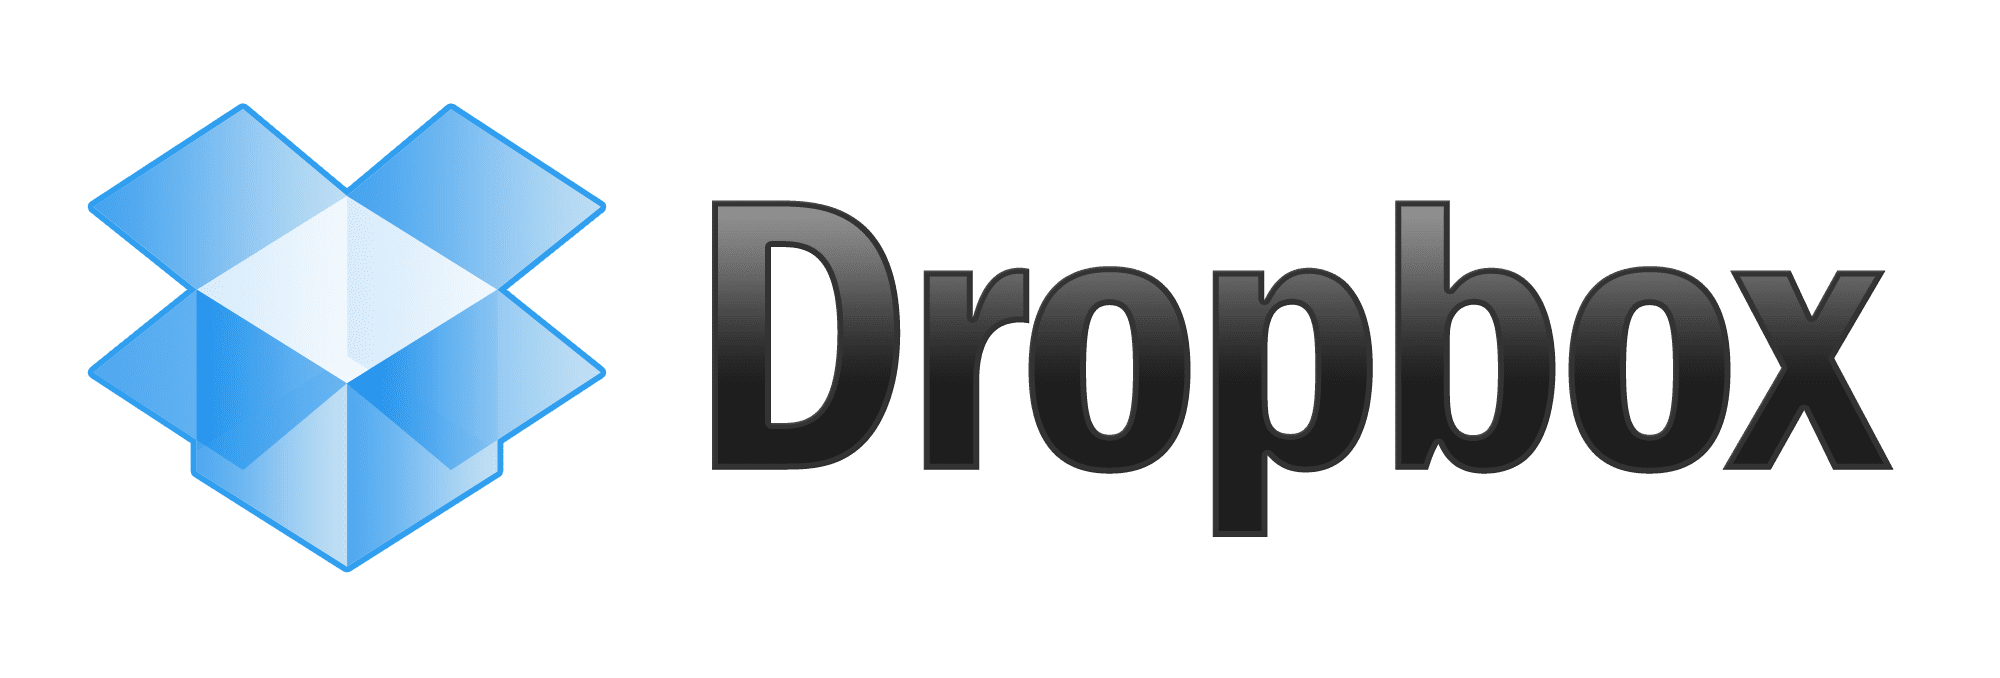 Añade 23gb a tu cuenta de Dropbox